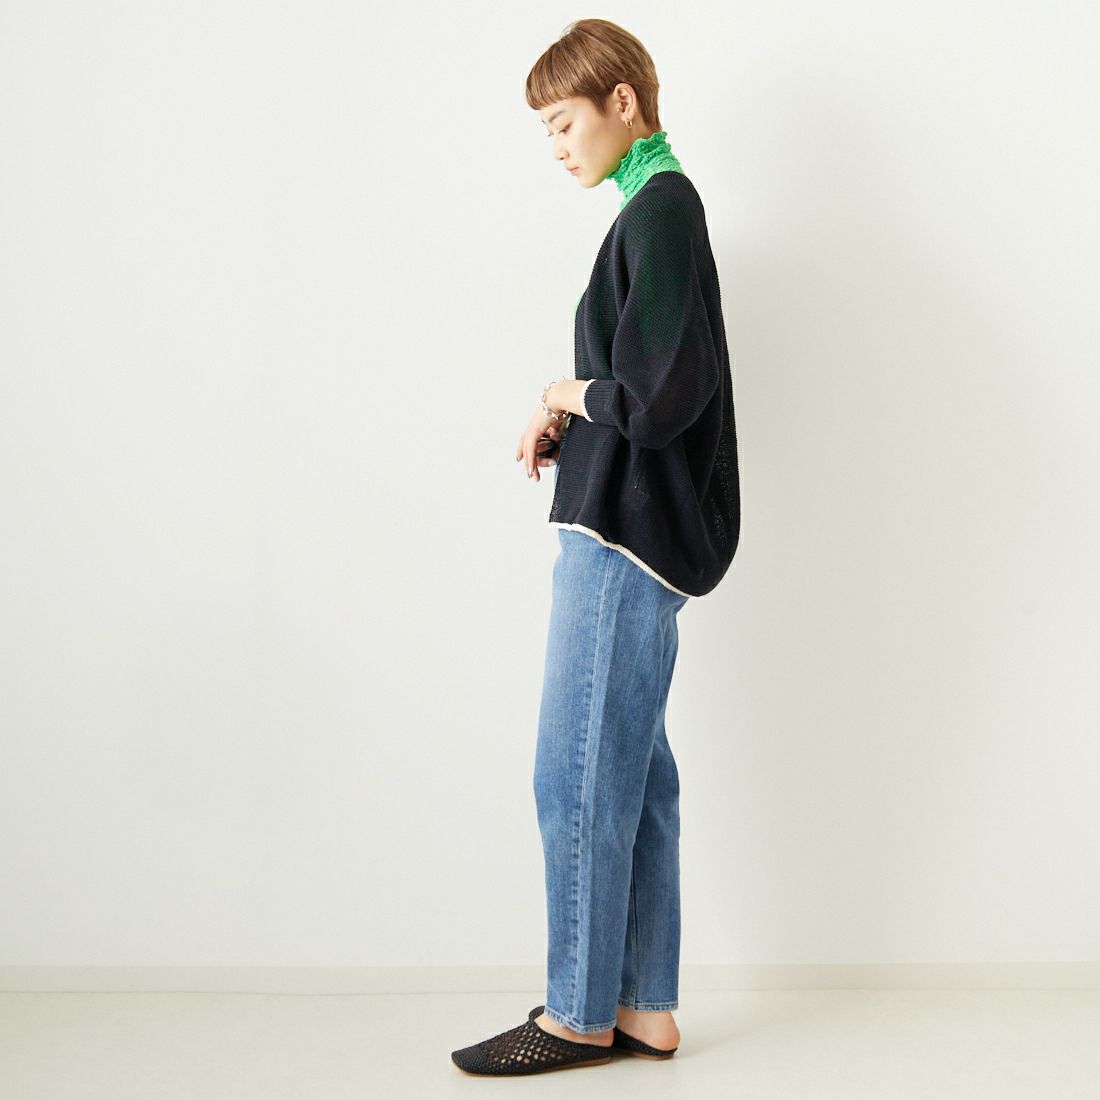 Jeans Factory Clothes [ジーンズファクトリークローズ] ホールガーメント配色カーディガン [113-1987] NVY/NAT &&モデル身長：160cm 着用サイズ：F&&